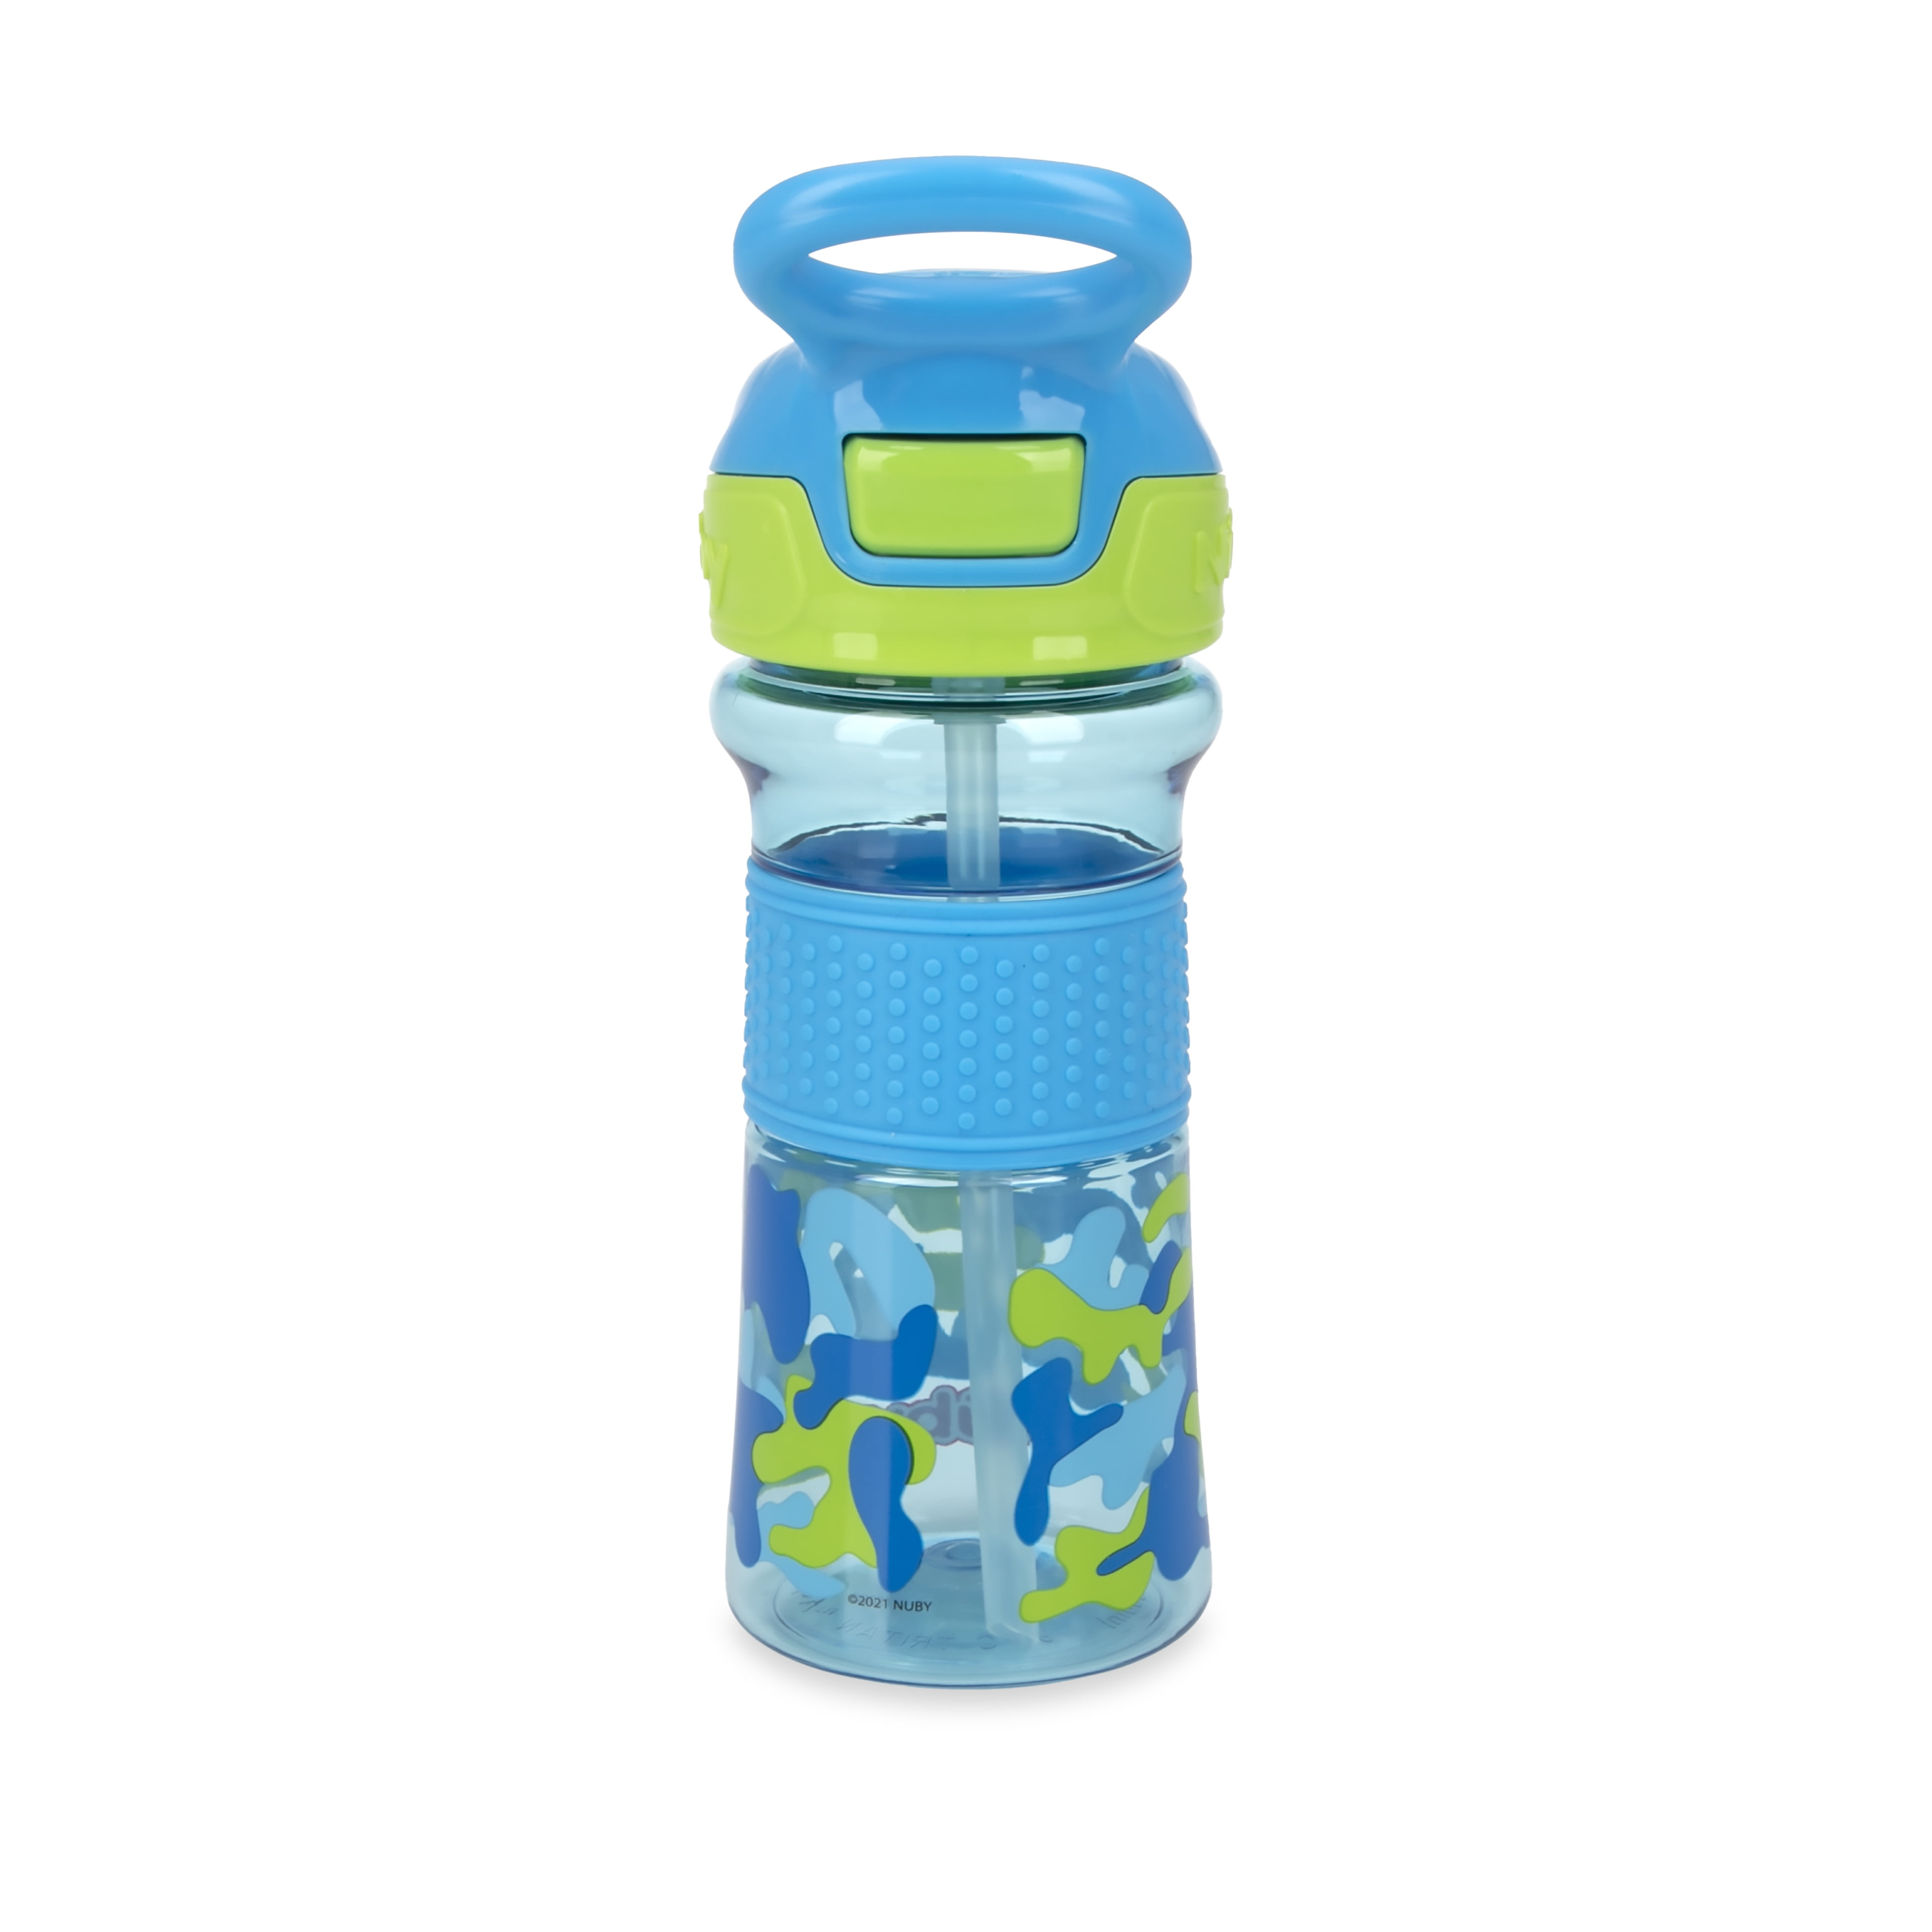 Nuby Printed Kids Pop Up Sipper Water Bottle 3 Pack, 12 oz (Pink, Purple, Aqua)